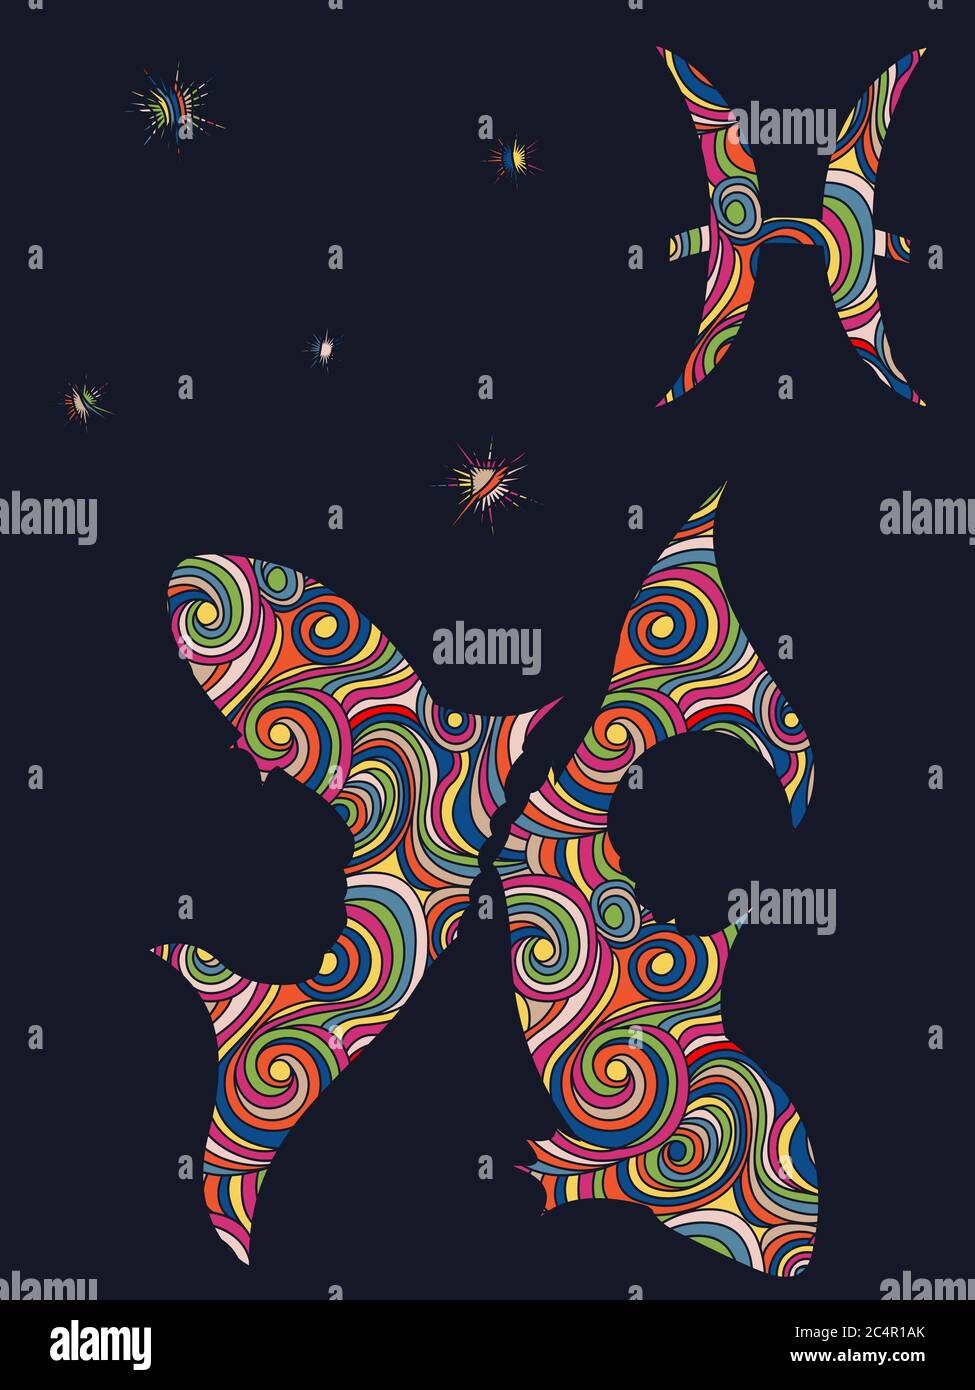 Signe du zodiaque les poissons se remplissent de formes ondulées colorées et muettes sur le fond gris foncé avec des étoiles et des symboles astrologiques, illustration vectorielle Illustration de Vecteur